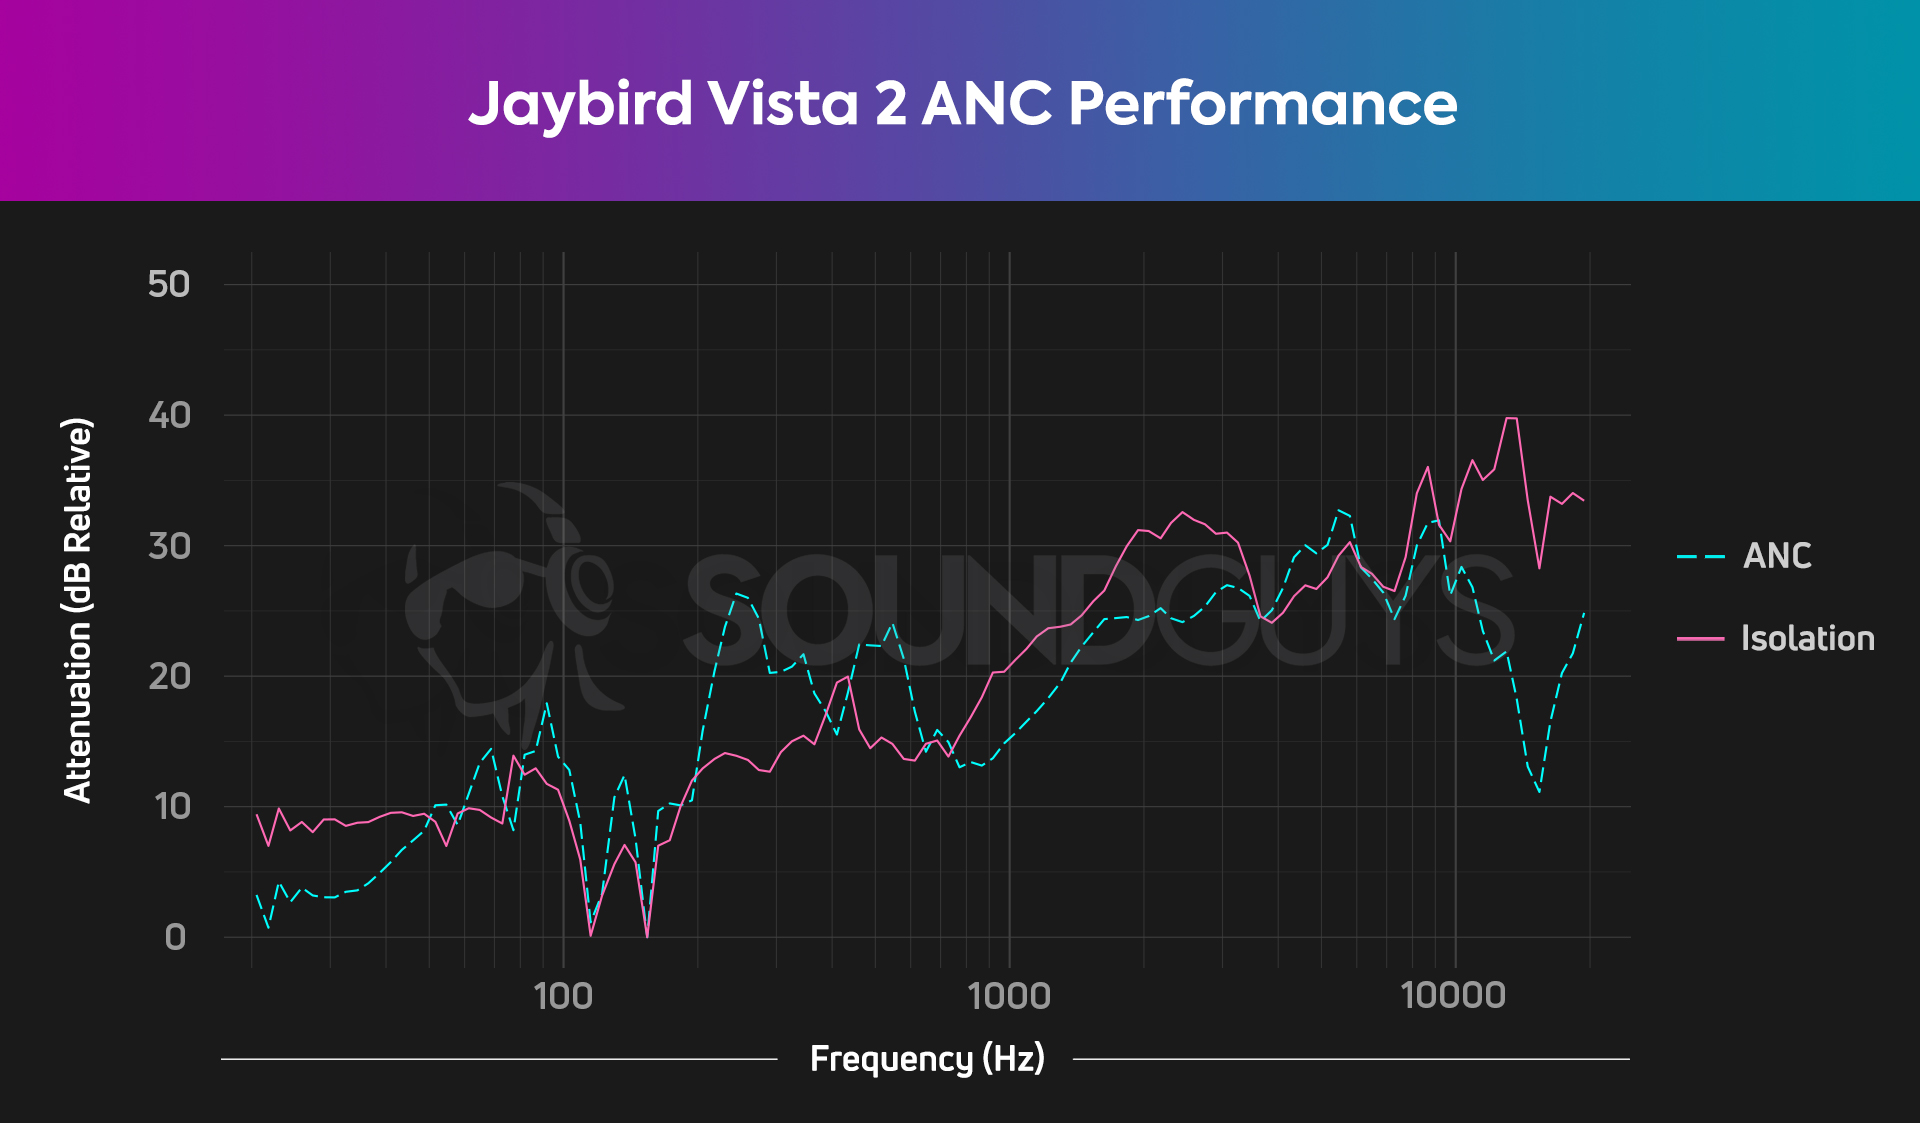 图表显示了Jaybird Vista 2上隔离和ANC的频率降低